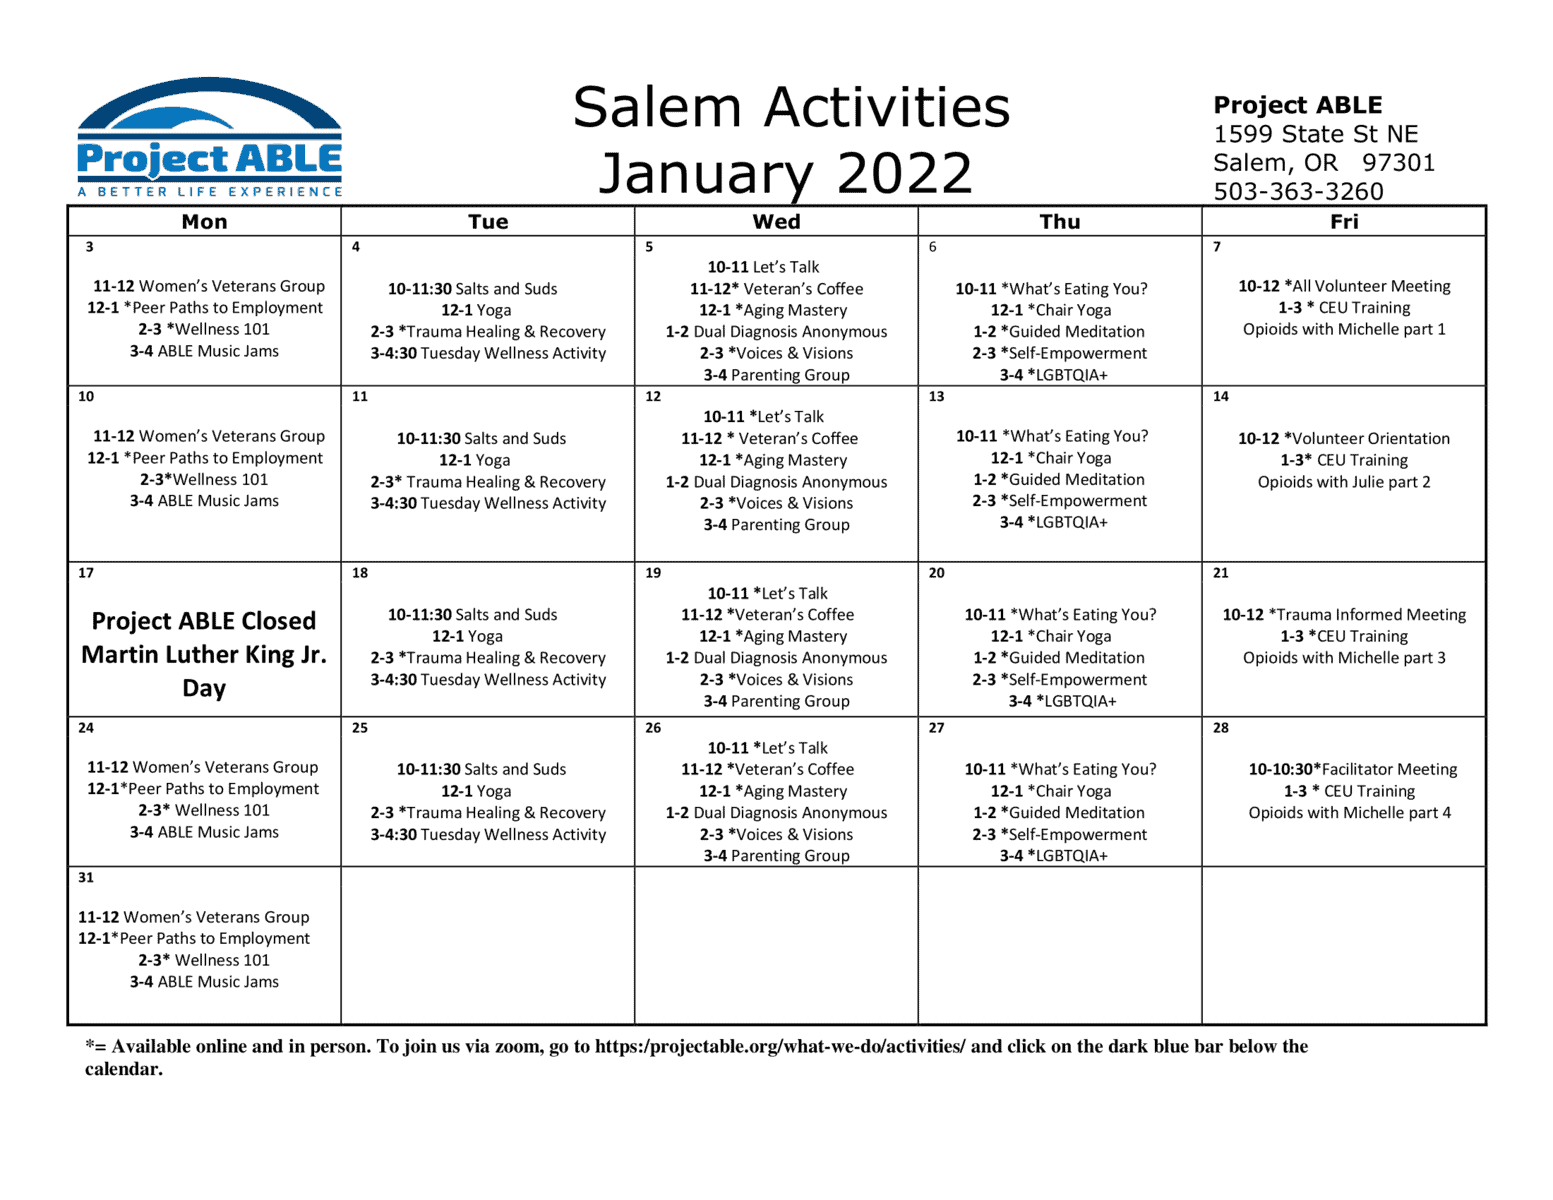 January 2022 Salem Calendar Rev B-1